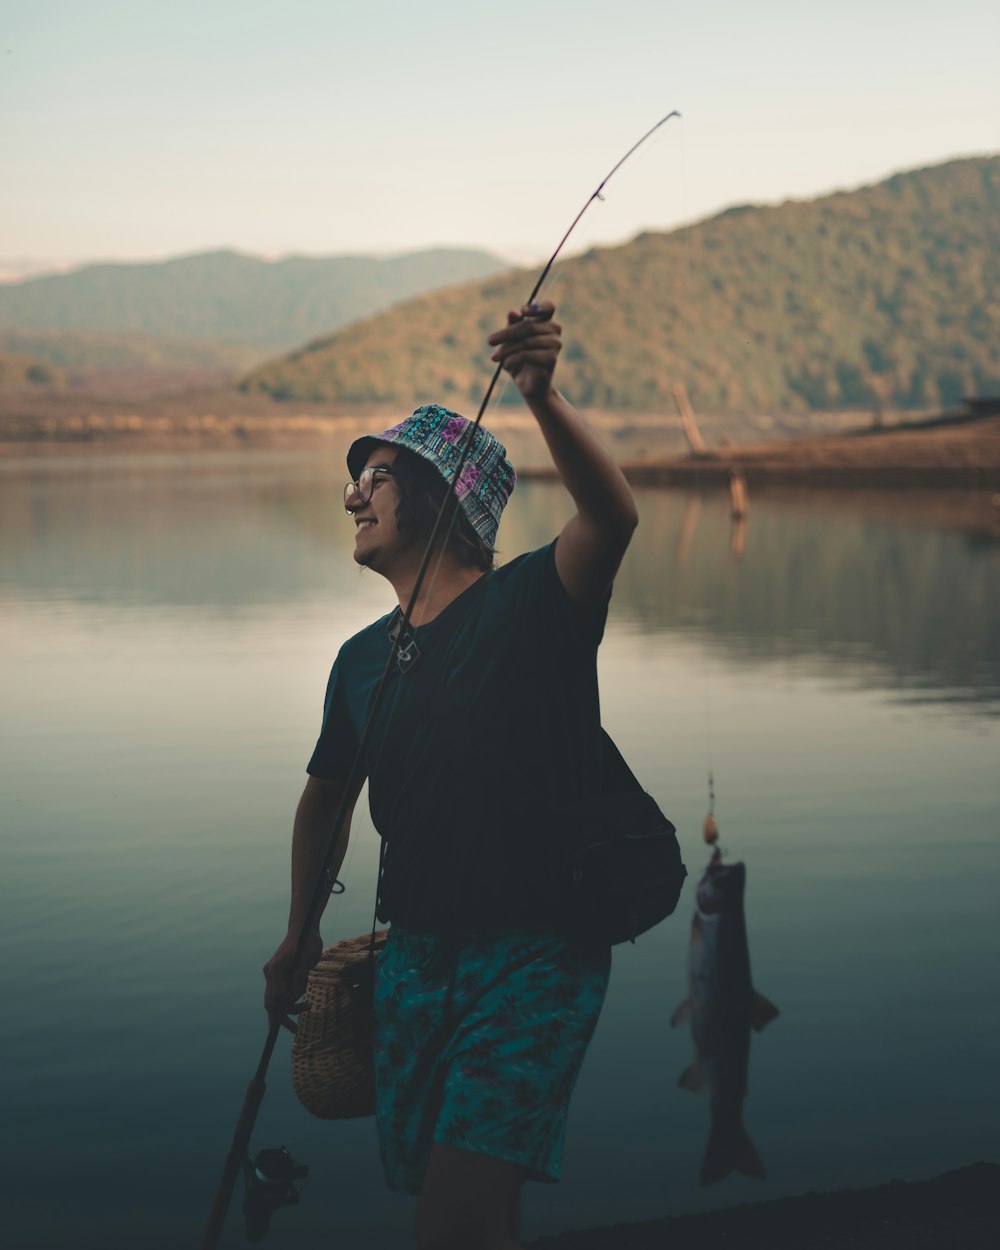 黒いシャツを着た男が湖のそばに立って釣り竿を持っている